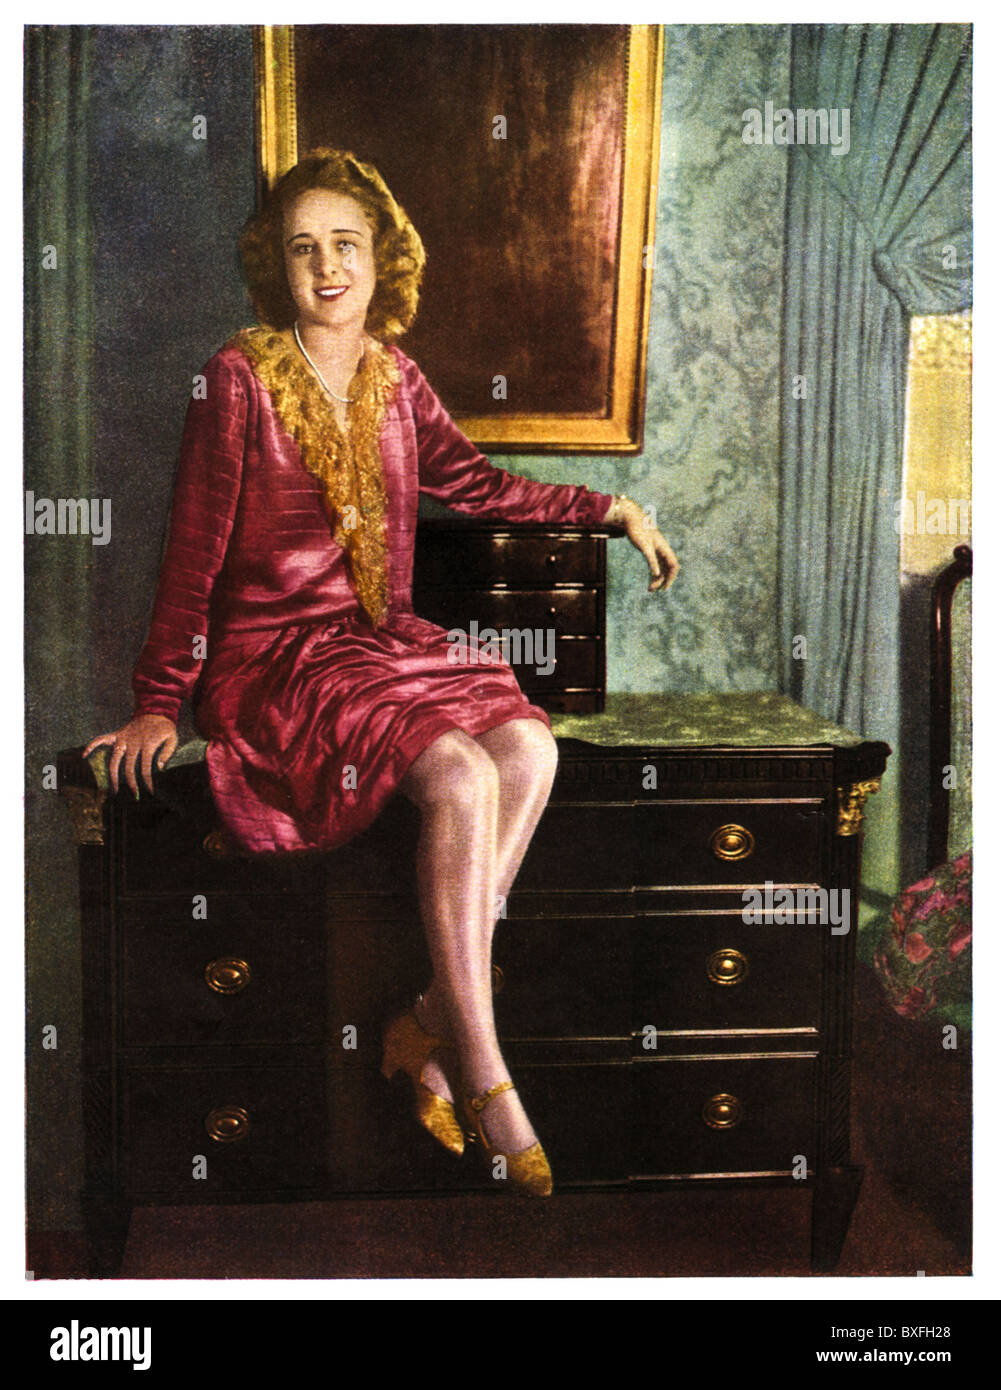 Personnes, femmes, modèle posant avec des bas de soie, soie de Bemberg,  Allemagne, vers 1929, droits additionnels-Clearences-non disponible Photo  Stock - Alamy